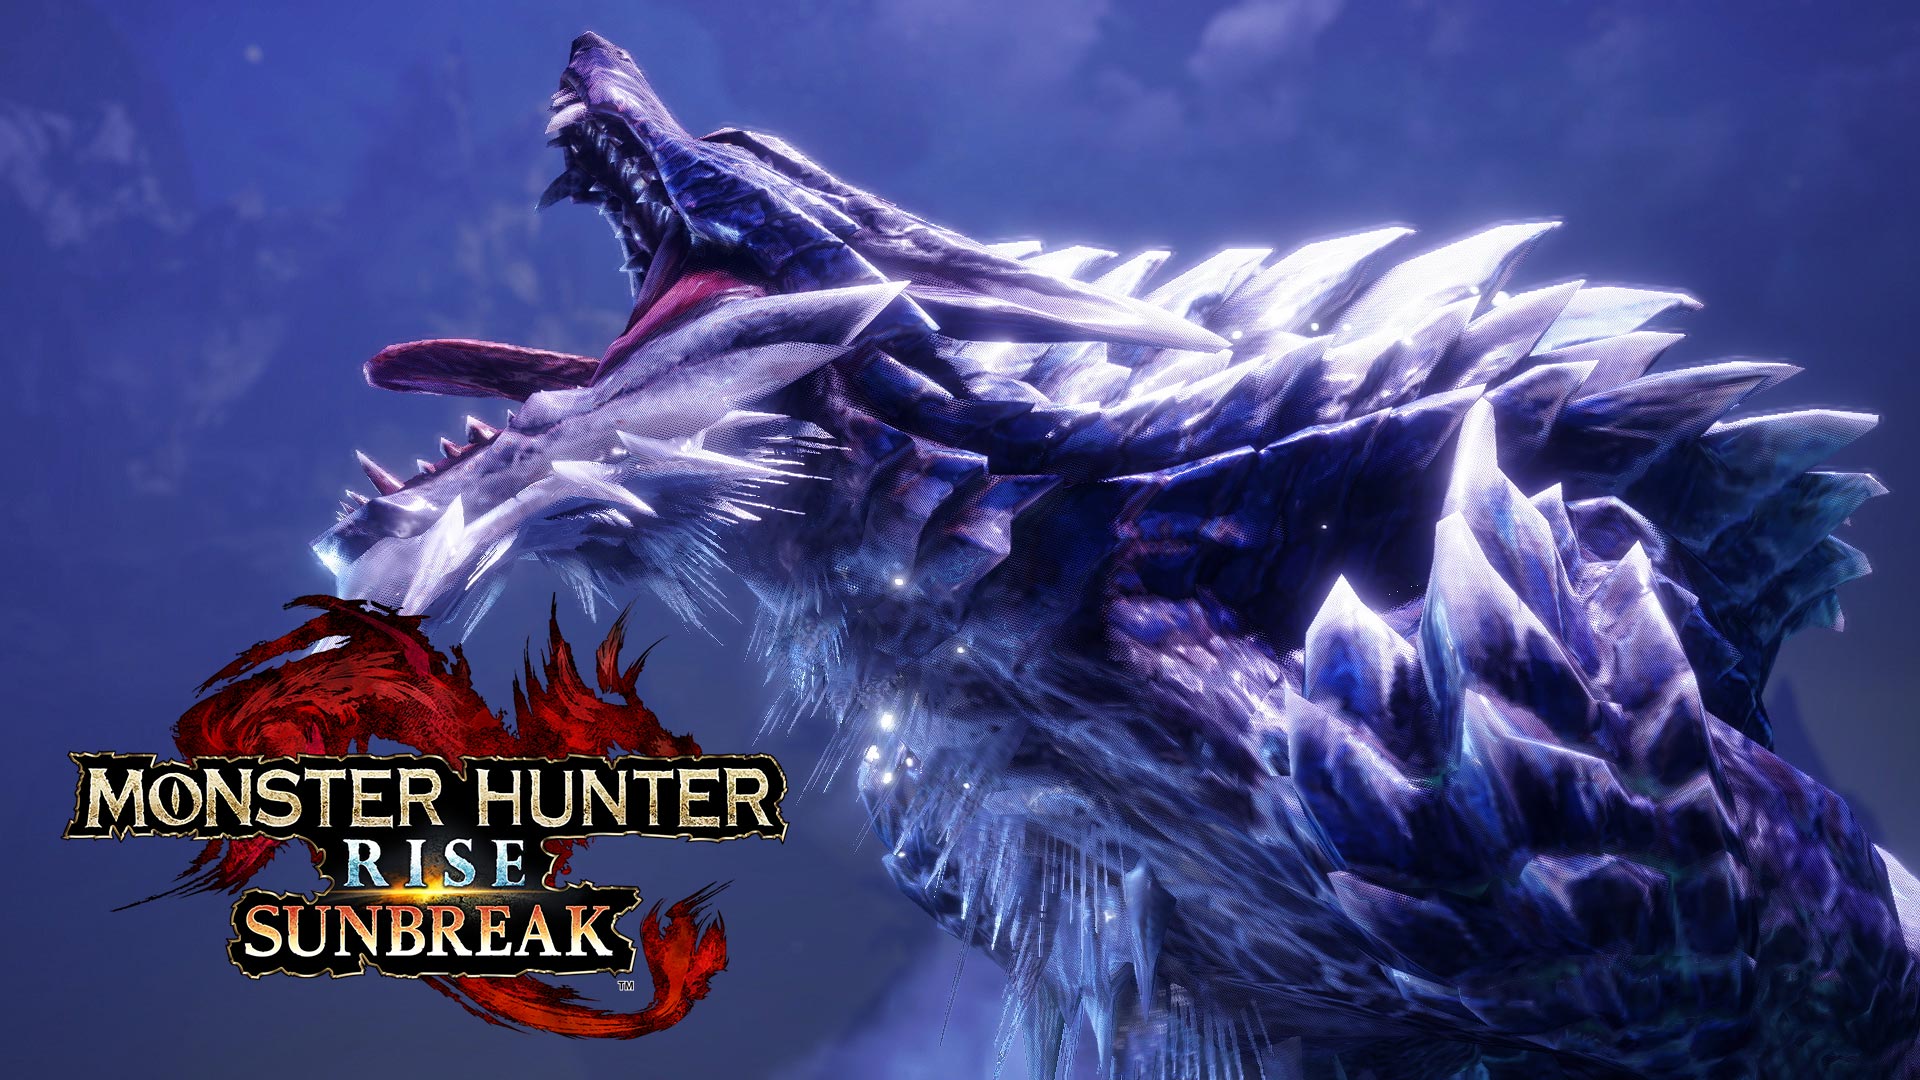 Monster Hunter Rise Sunbreak details coming Spring 2022